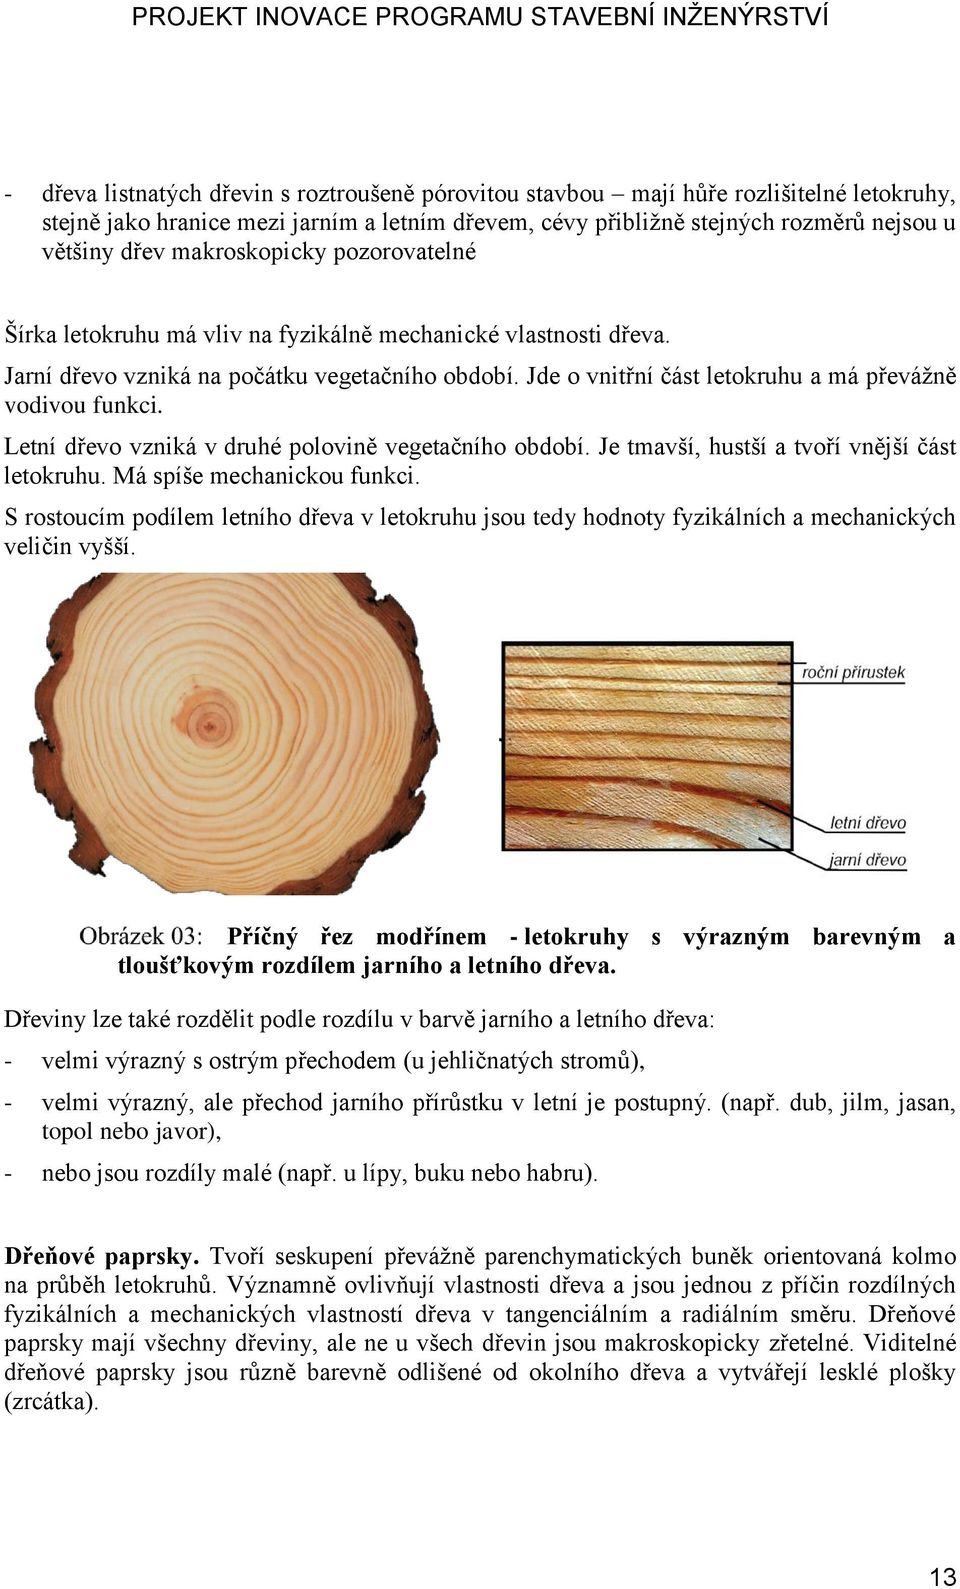 Jde o vnitřní část letokruhu a má převážně vodivou funkci. Letní dřevo vzniká v druhé polovině vegetačního období. Je tmavší, hustší a tvoří vnější část letokruhu. Má spíše mechanickou funkci.